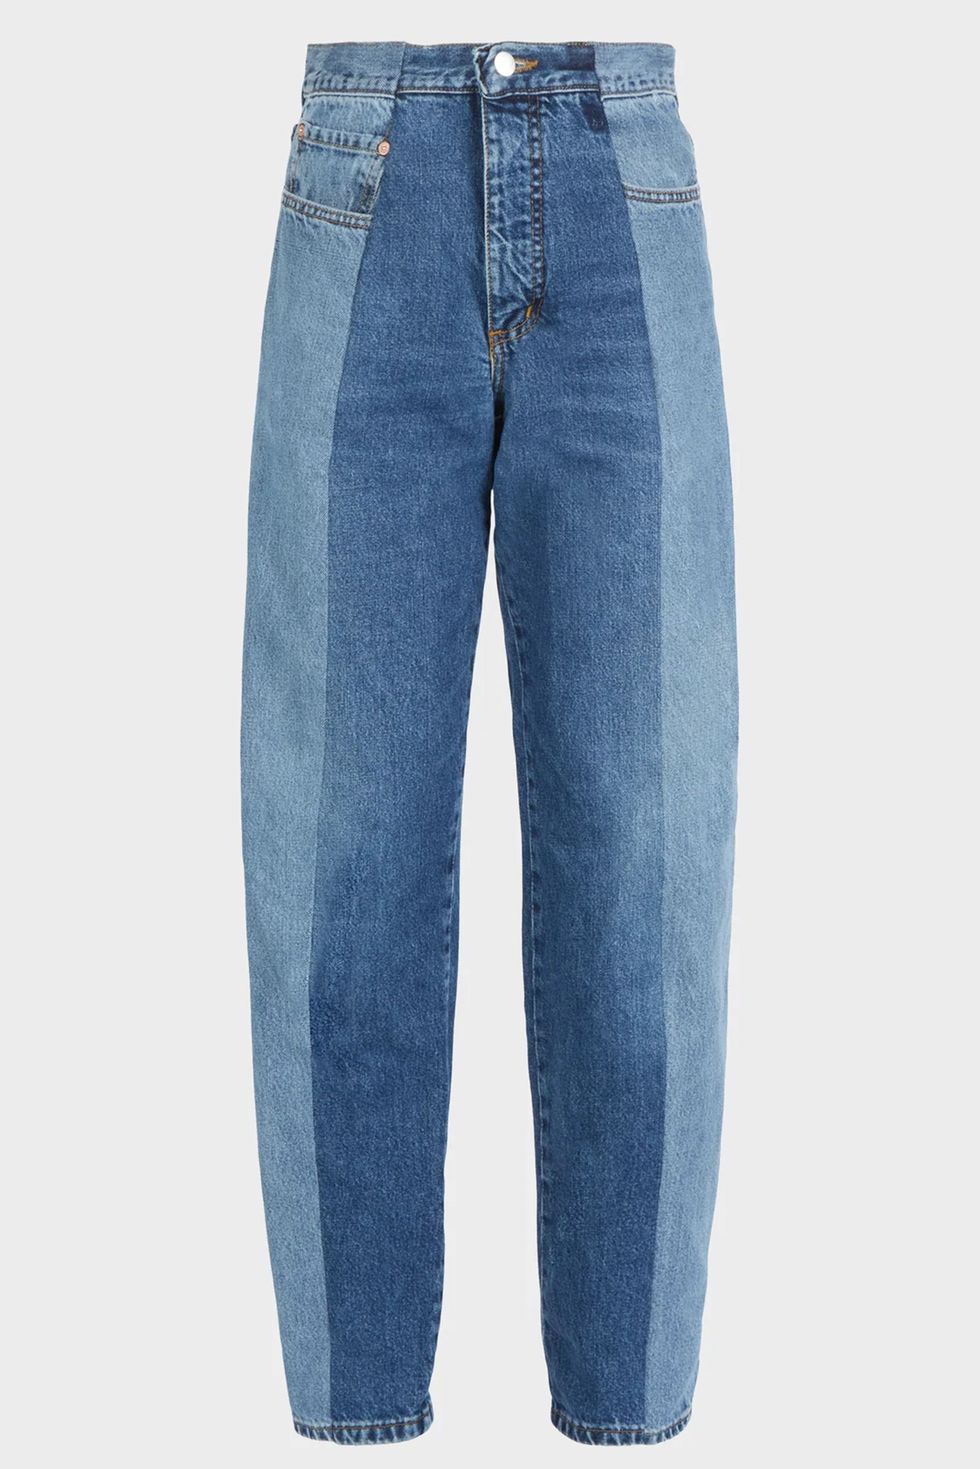 E.L.V Denim jeans